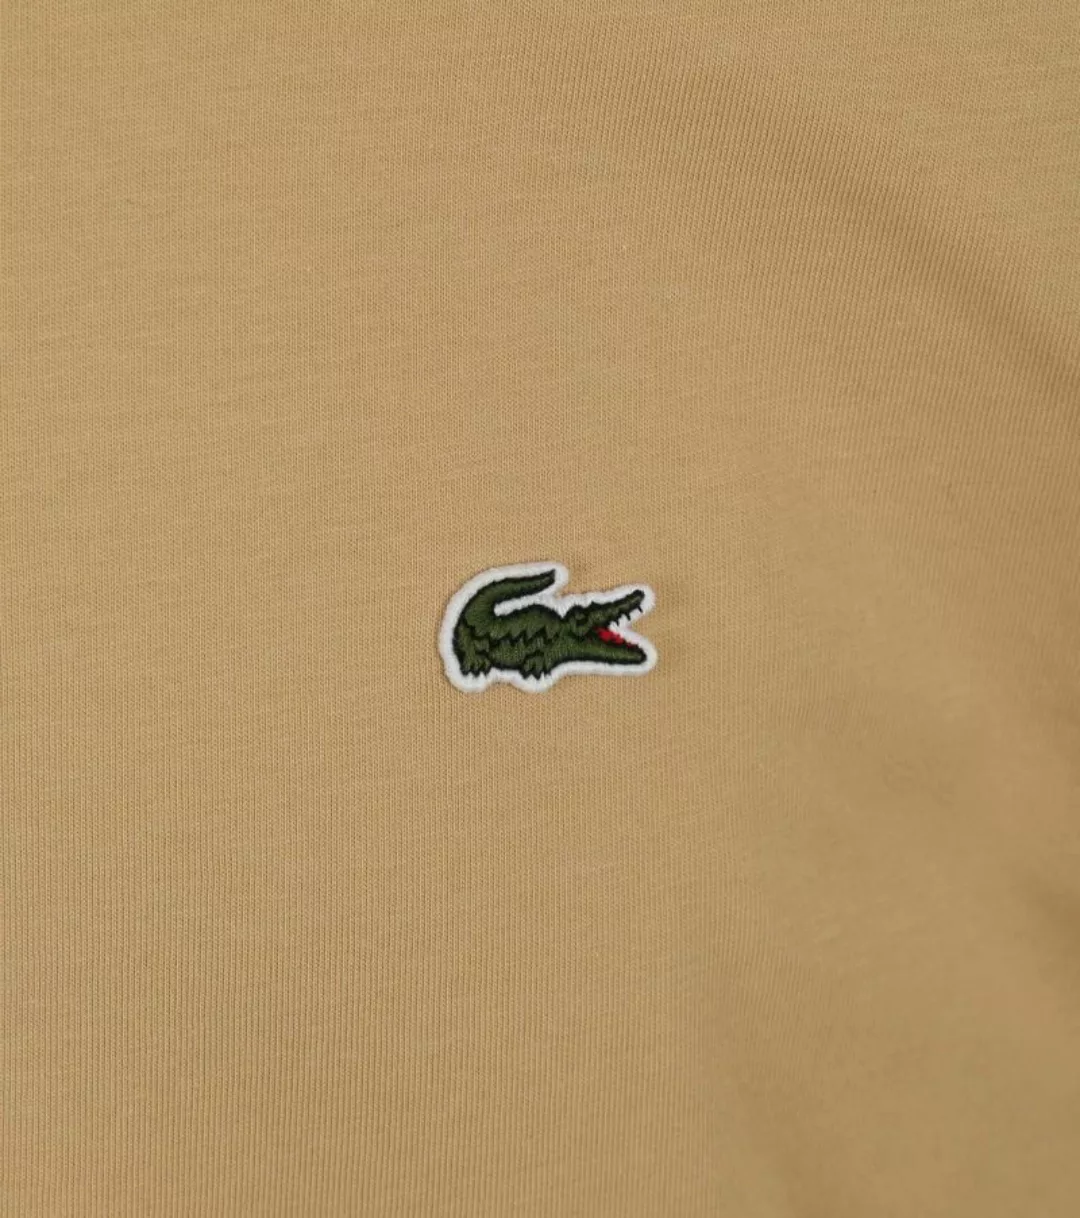 Lacoste T-Shirt Beige - Größe S günstig online kaufen